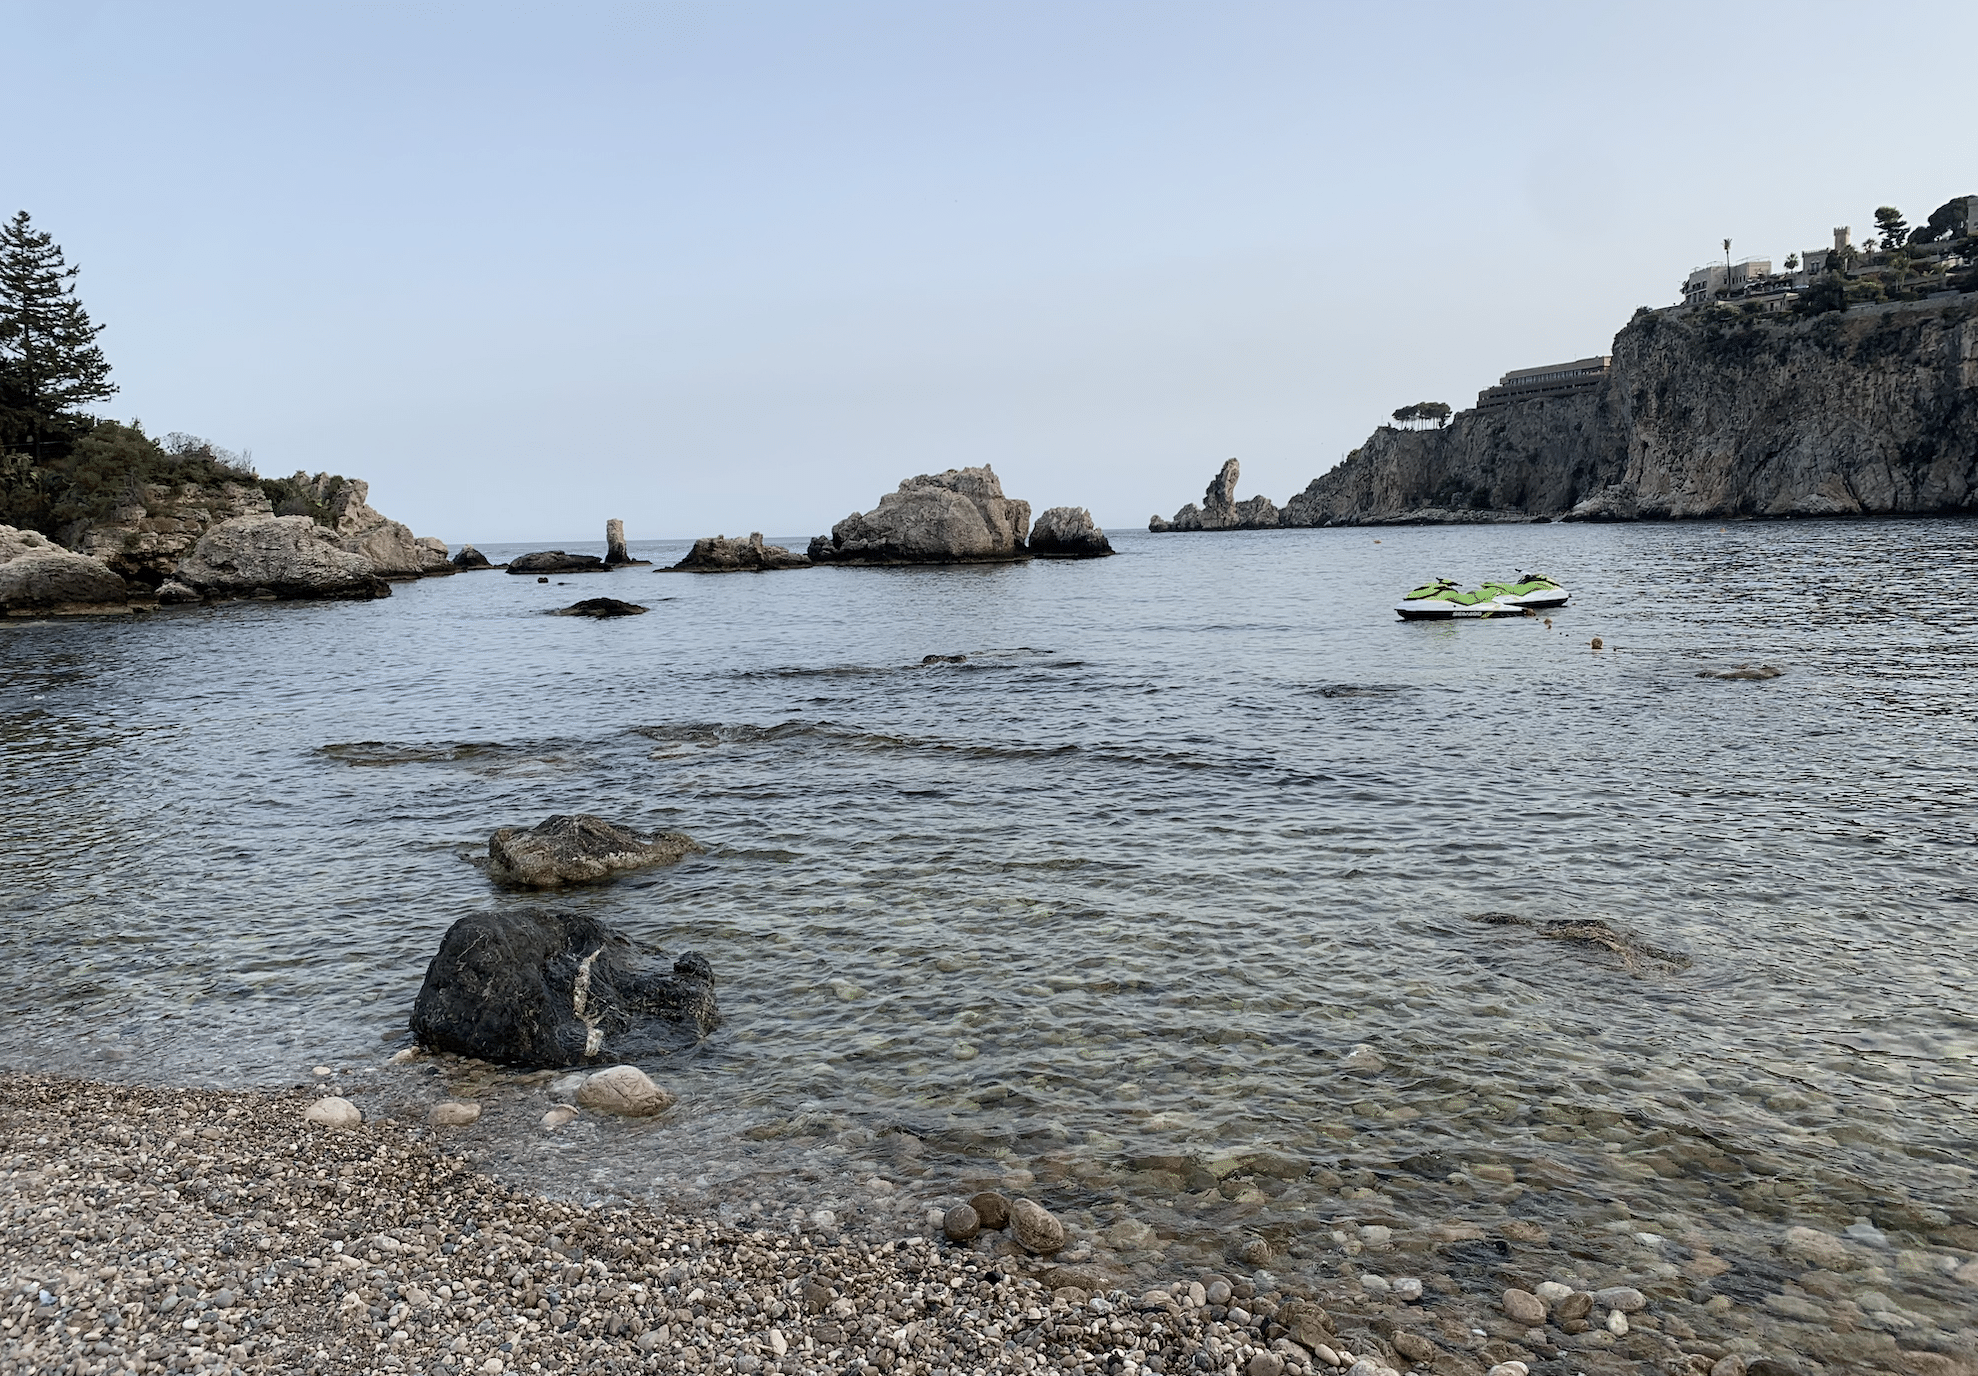 plus belles plages de sicile : la reserve naturelle d'isola bella